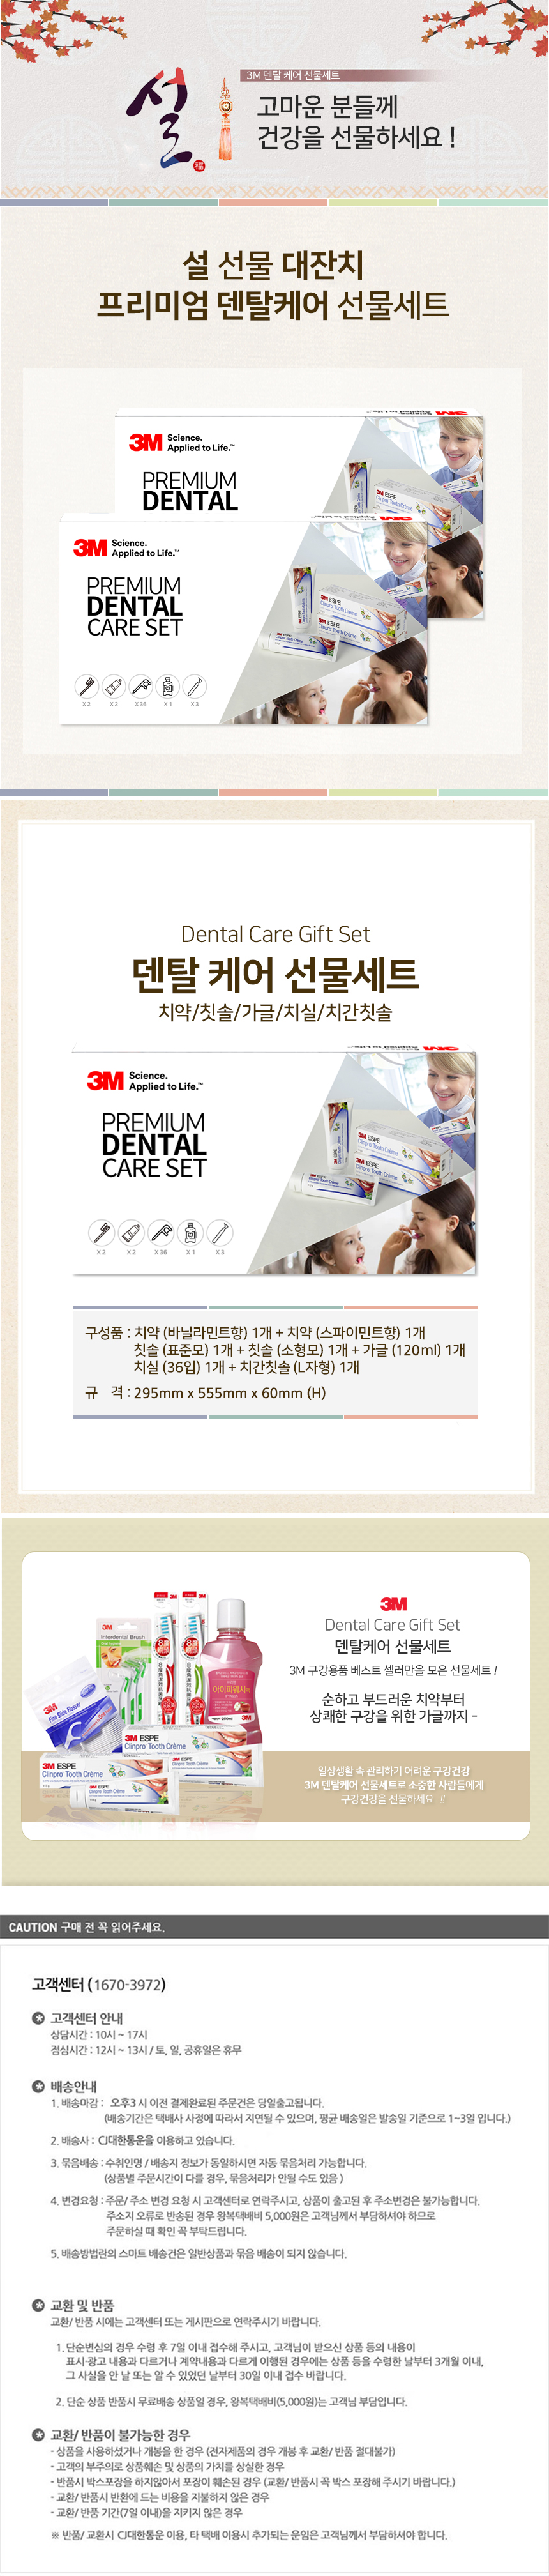 dental_care_gift_set_01.jpg